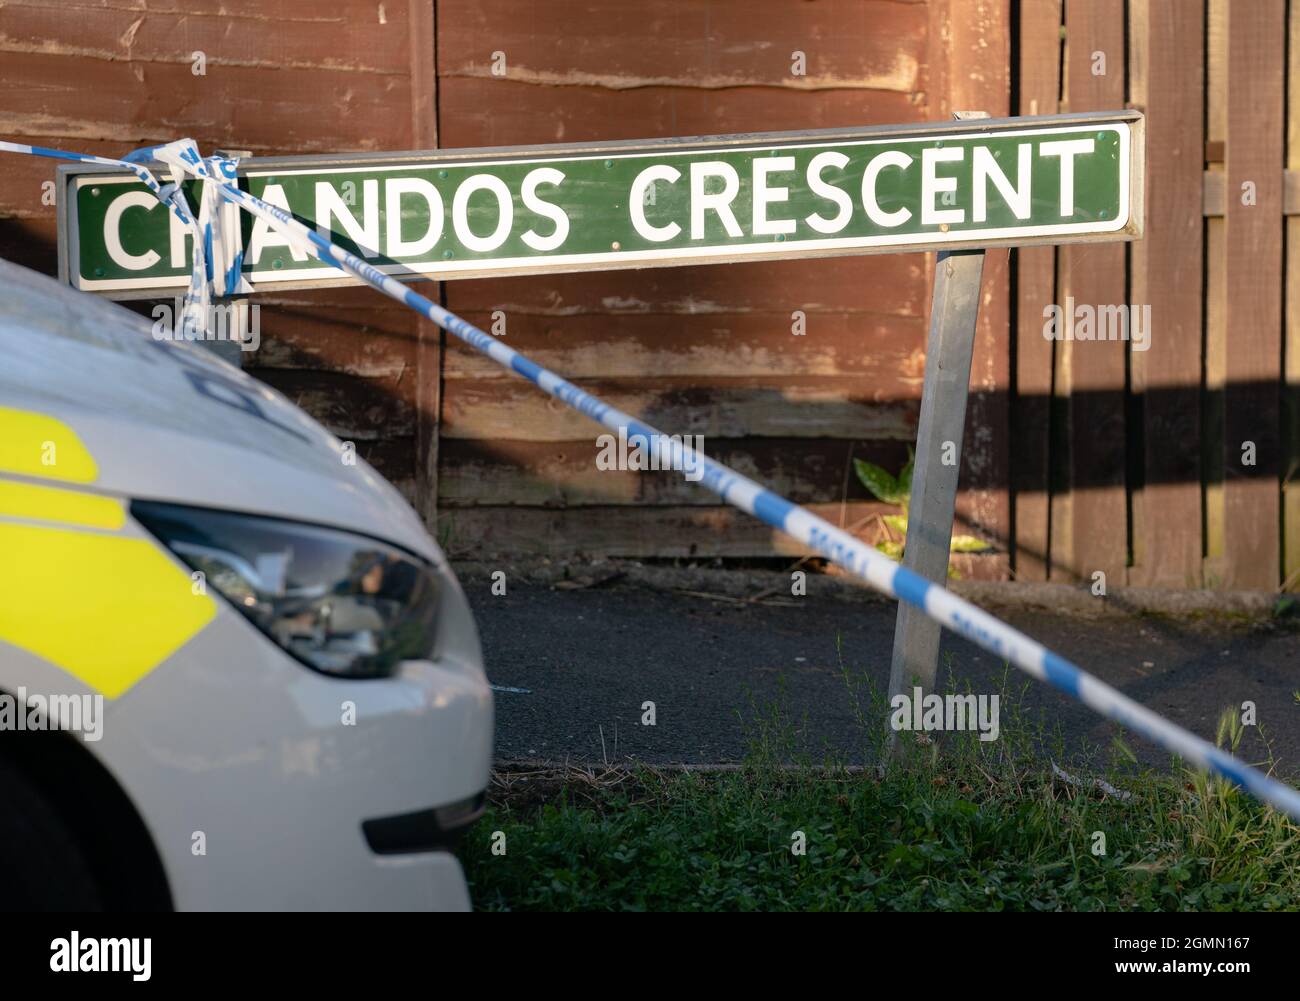 La scène à Chandos Crescent à Killamarsh, près de Sheffield, où quatre personnes ont été trouvées mortes dans une maison dimanche. La police de Derbyshire a déclaré qu'un homme est en garde à vue et qu'il ne cherche personne d'autre en relation avec la mort. Date de la photo: Lundi 20 septembre 2021. Banque D'Images